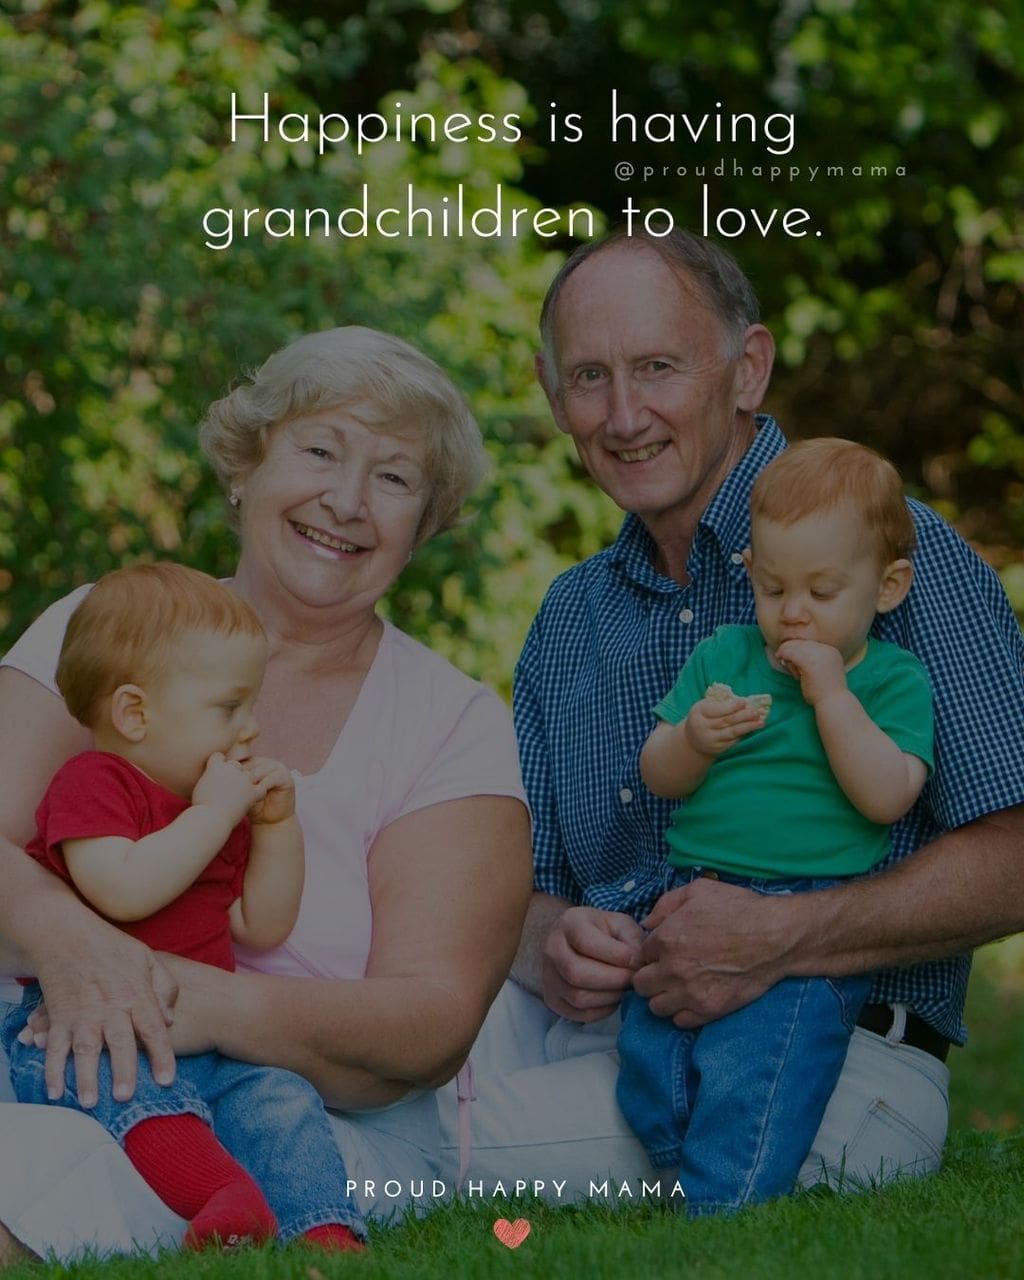 Quotes for Grandchildren - Happiness is having grandchildren to love.